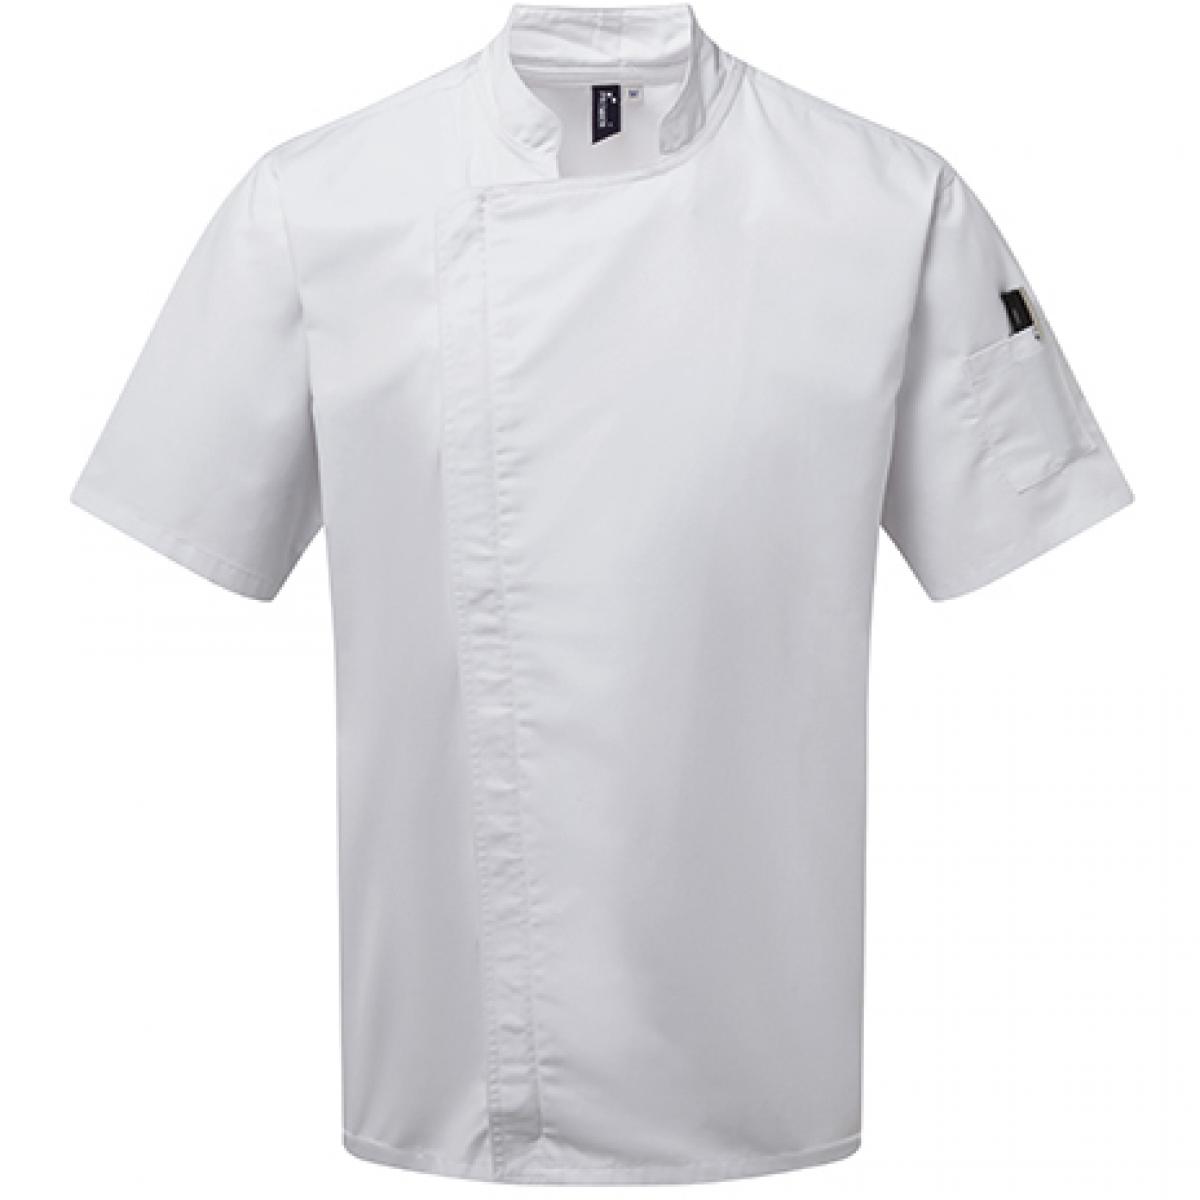 Hersteller: Premier Workwear Herstellernummer: PR906 Artikelbezeichnung: Kochjacke Chefs Zip-Close Short Sleeve Jacket Farbe: White